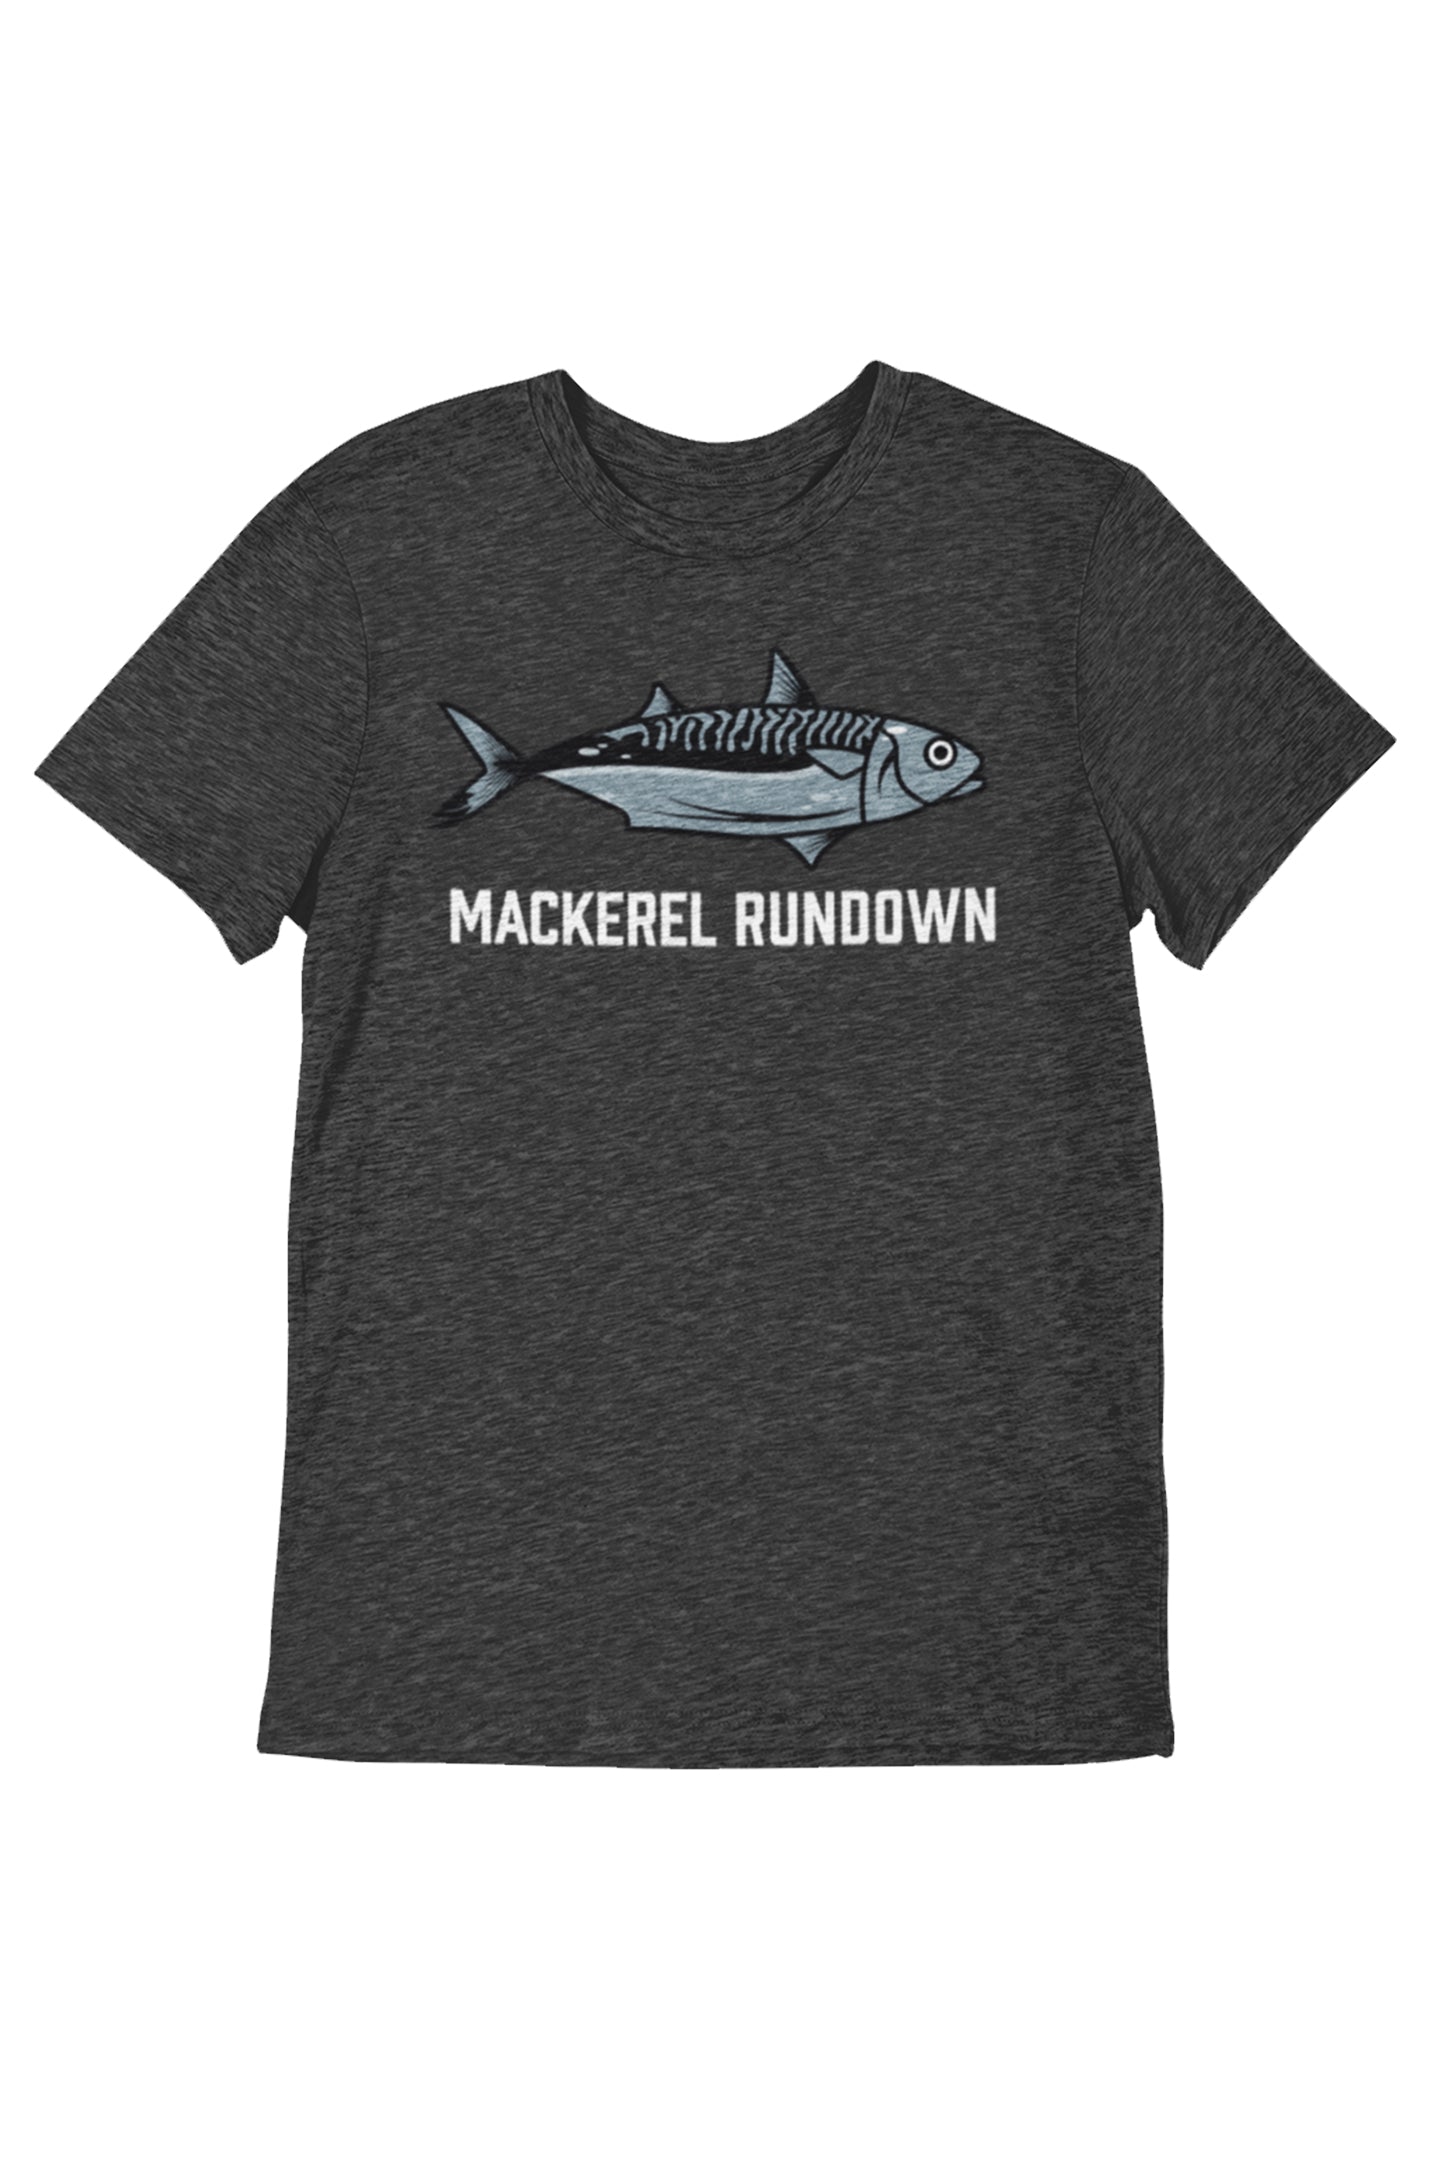 Mackerel Rundown - Men's